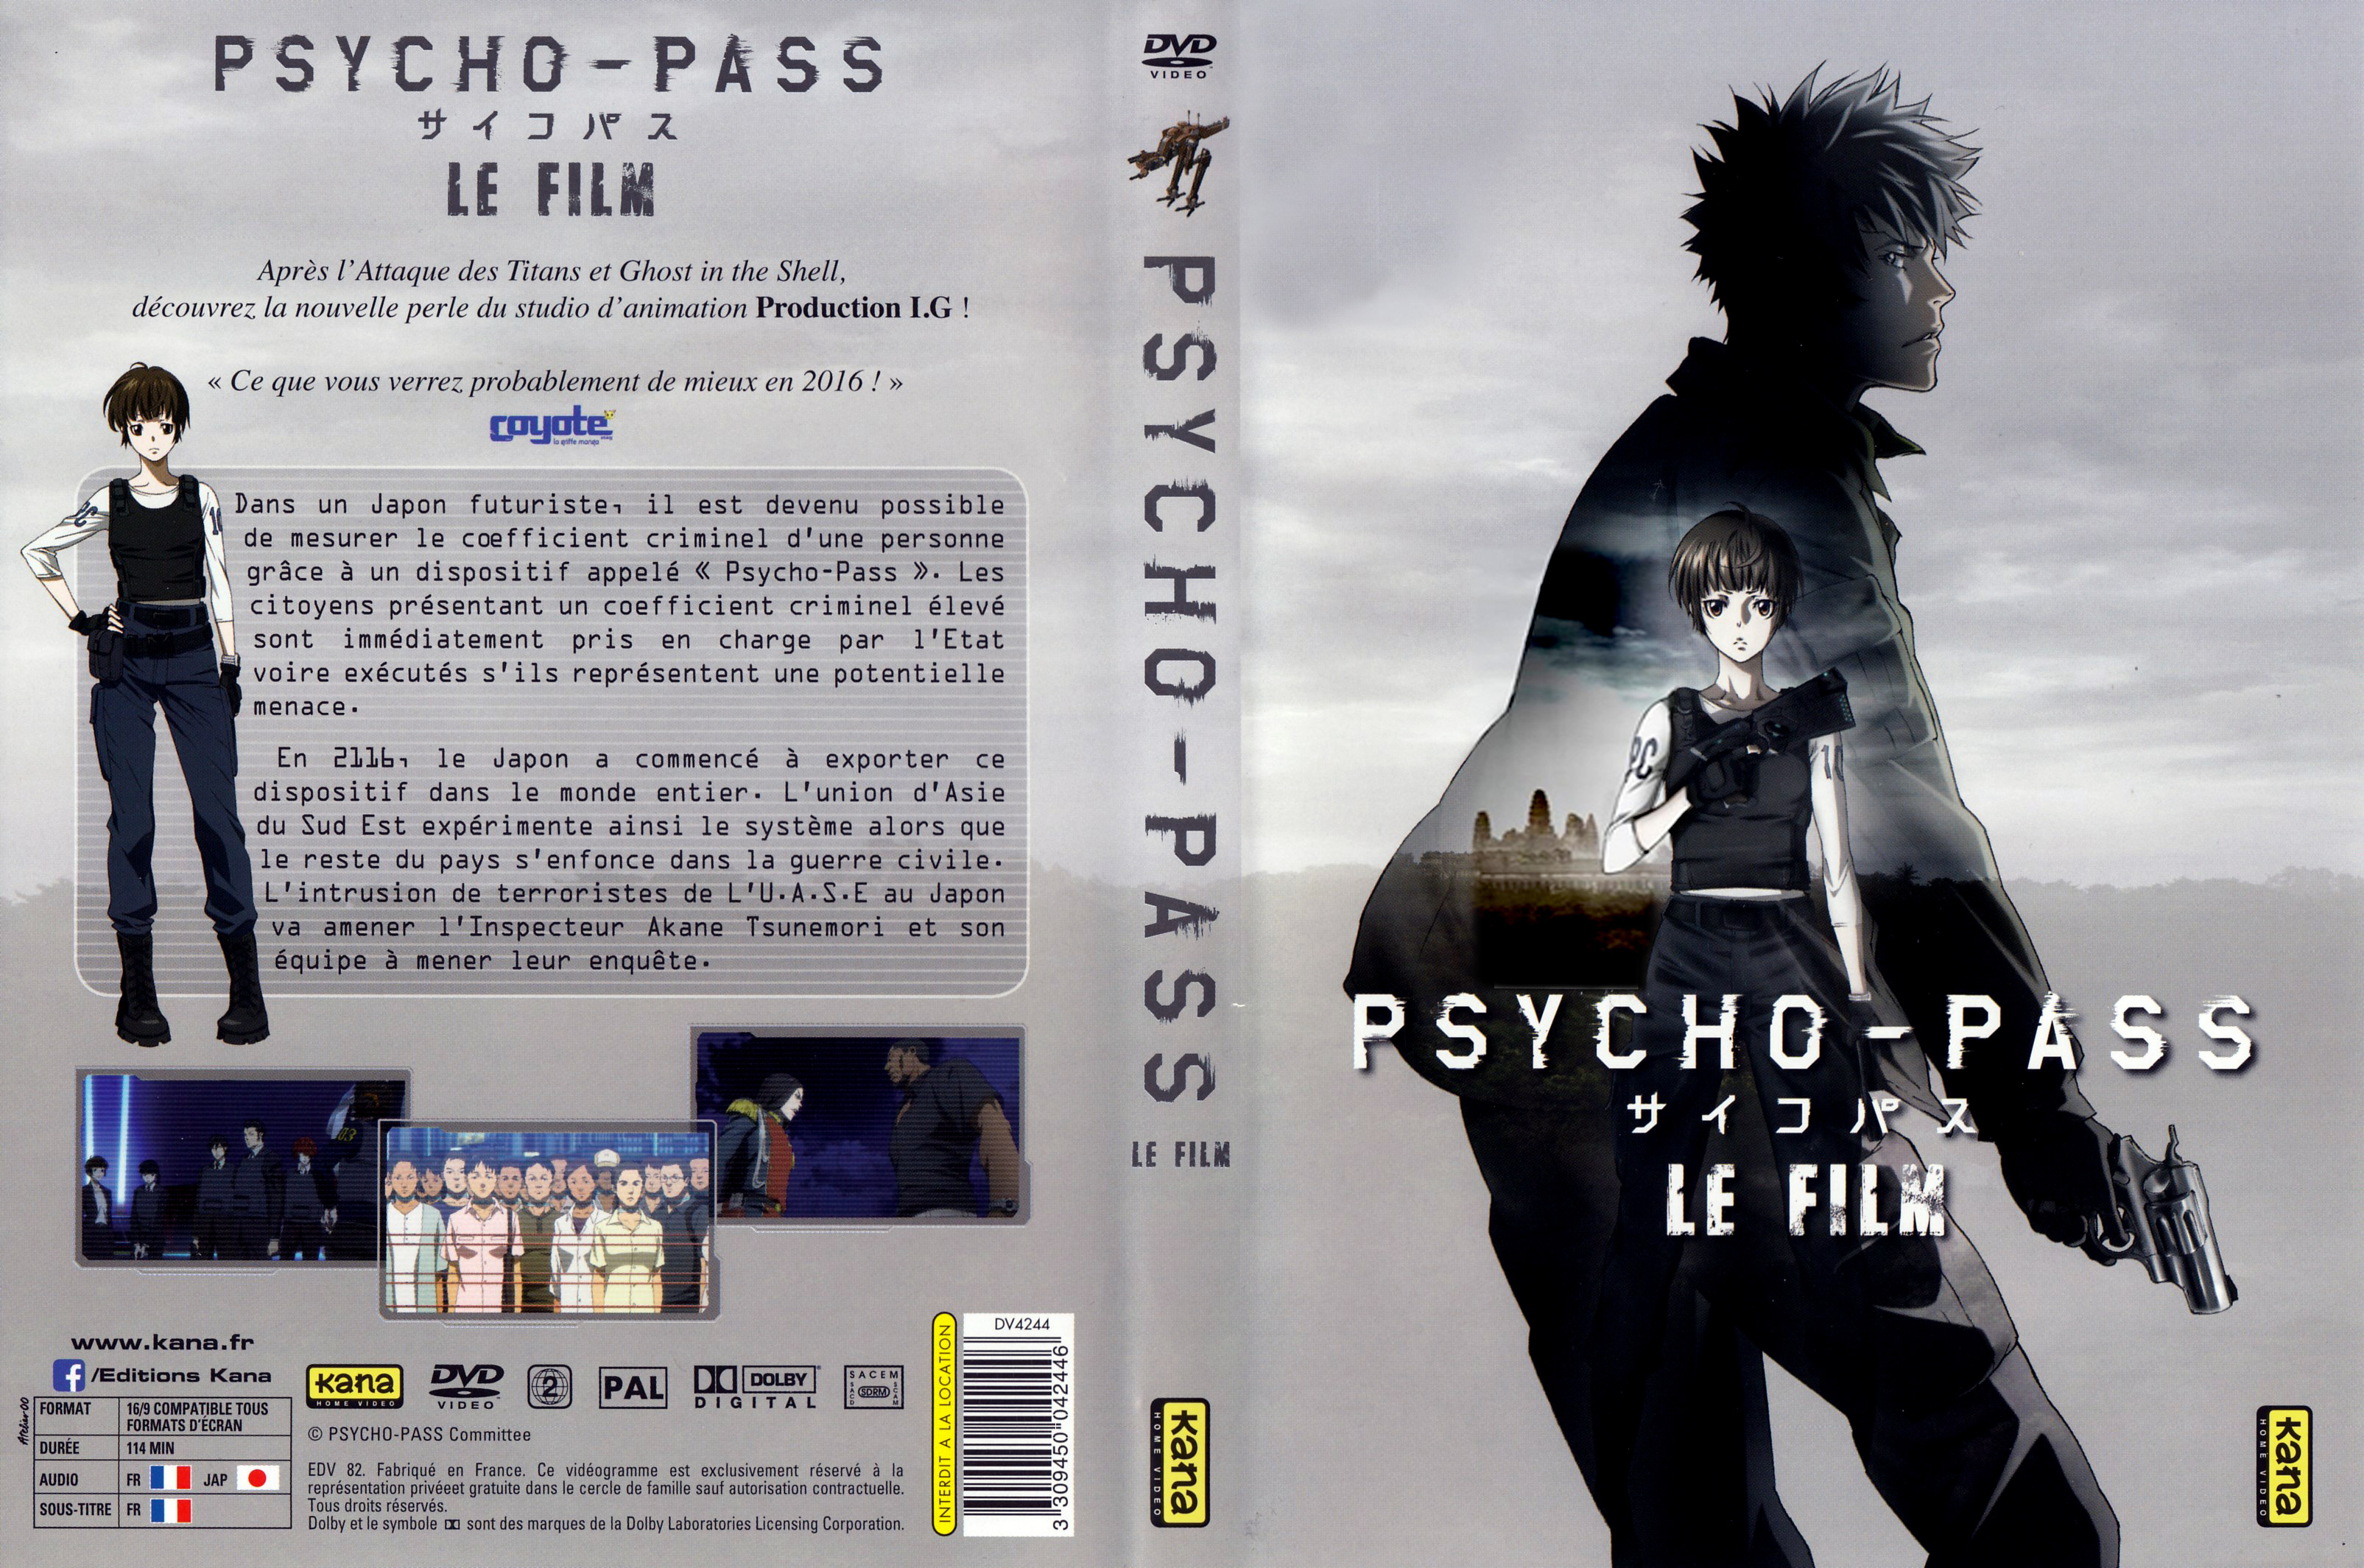 Jaquette DVD Psycho-Pass le film